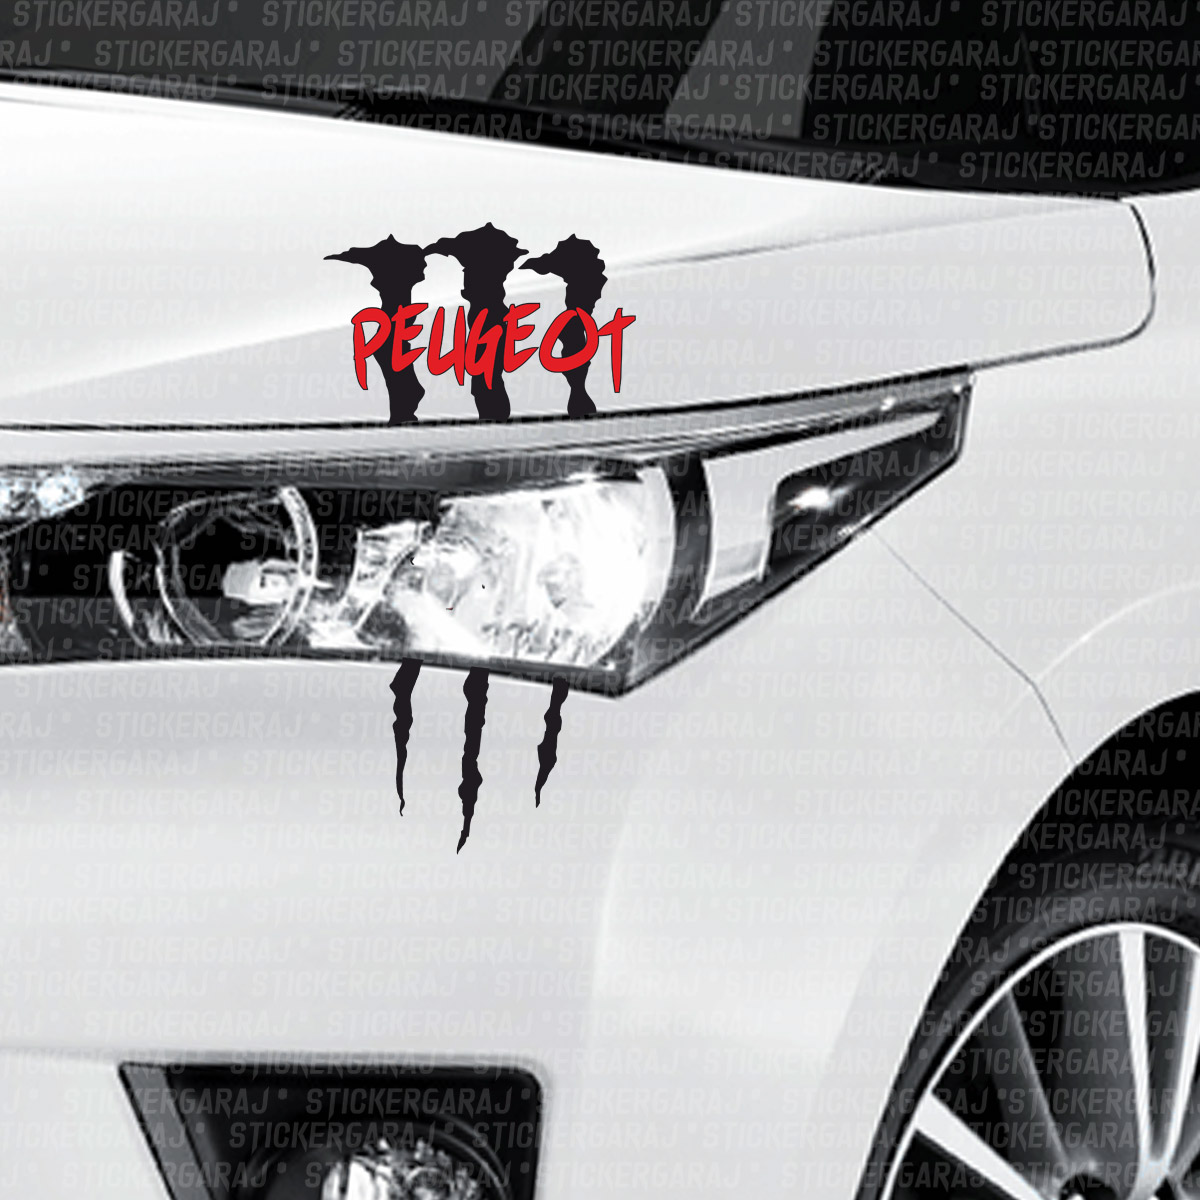 Peugeot monsterr sticker - Peugeot Monster Sticker